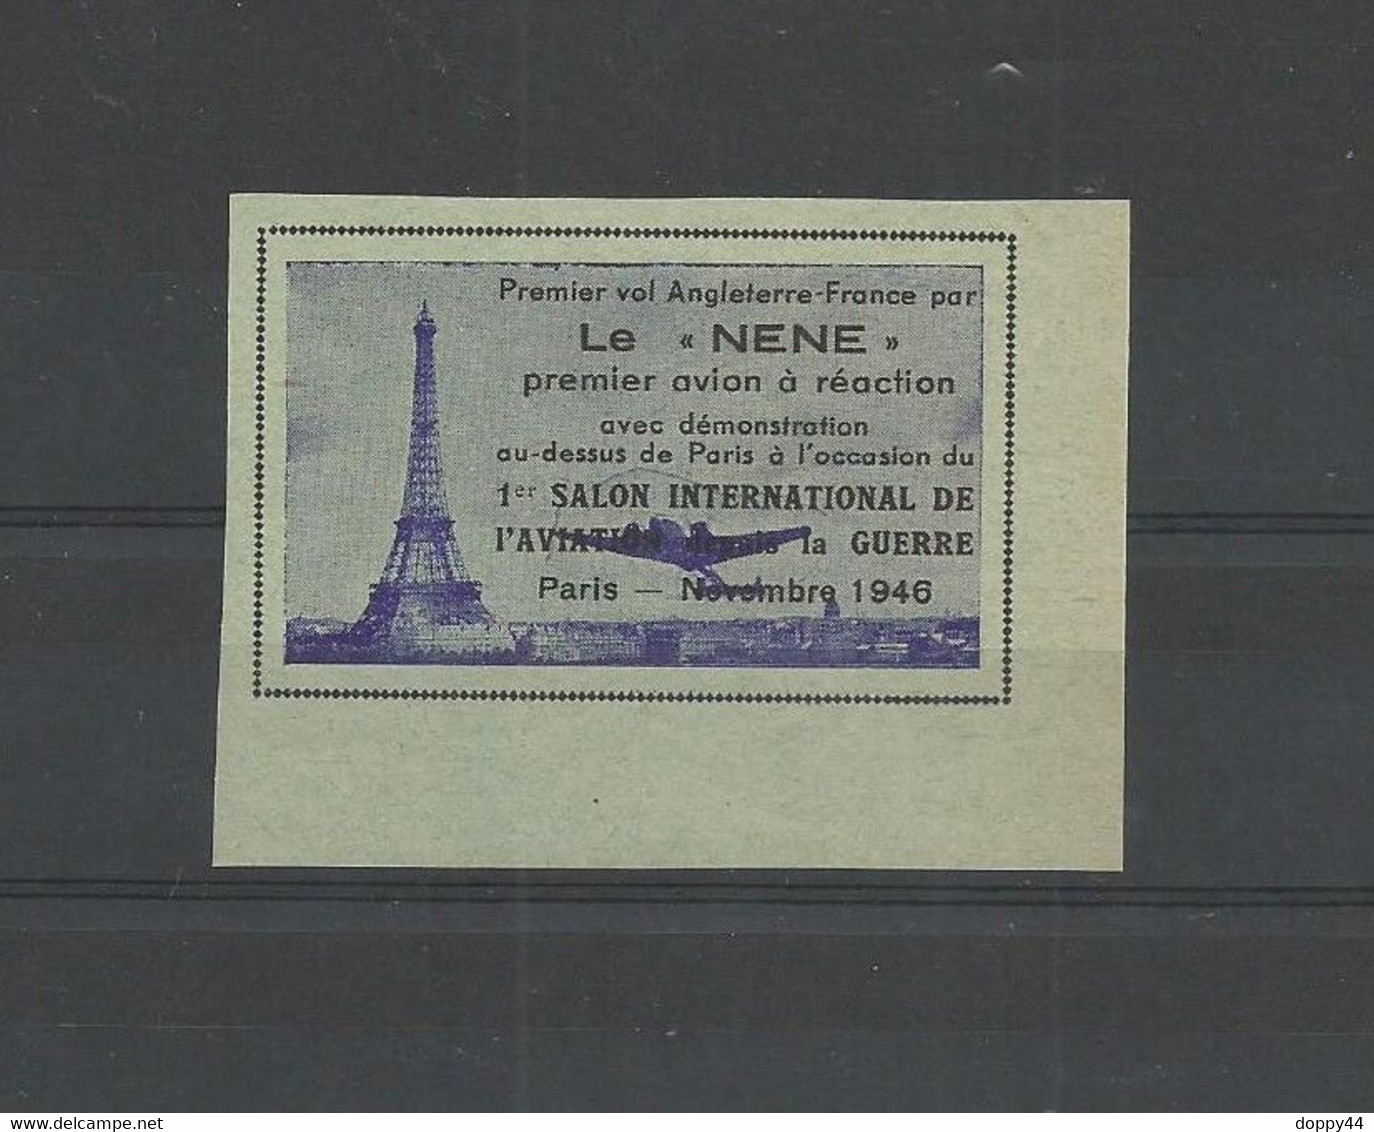 VIGNETTE AVIATION PREMIER VOL FRANCE ANGLETERRE PAR LE "NENE" A L'OCCASION DU SALON PARIS NOVEMBRE 1945. - Aviation